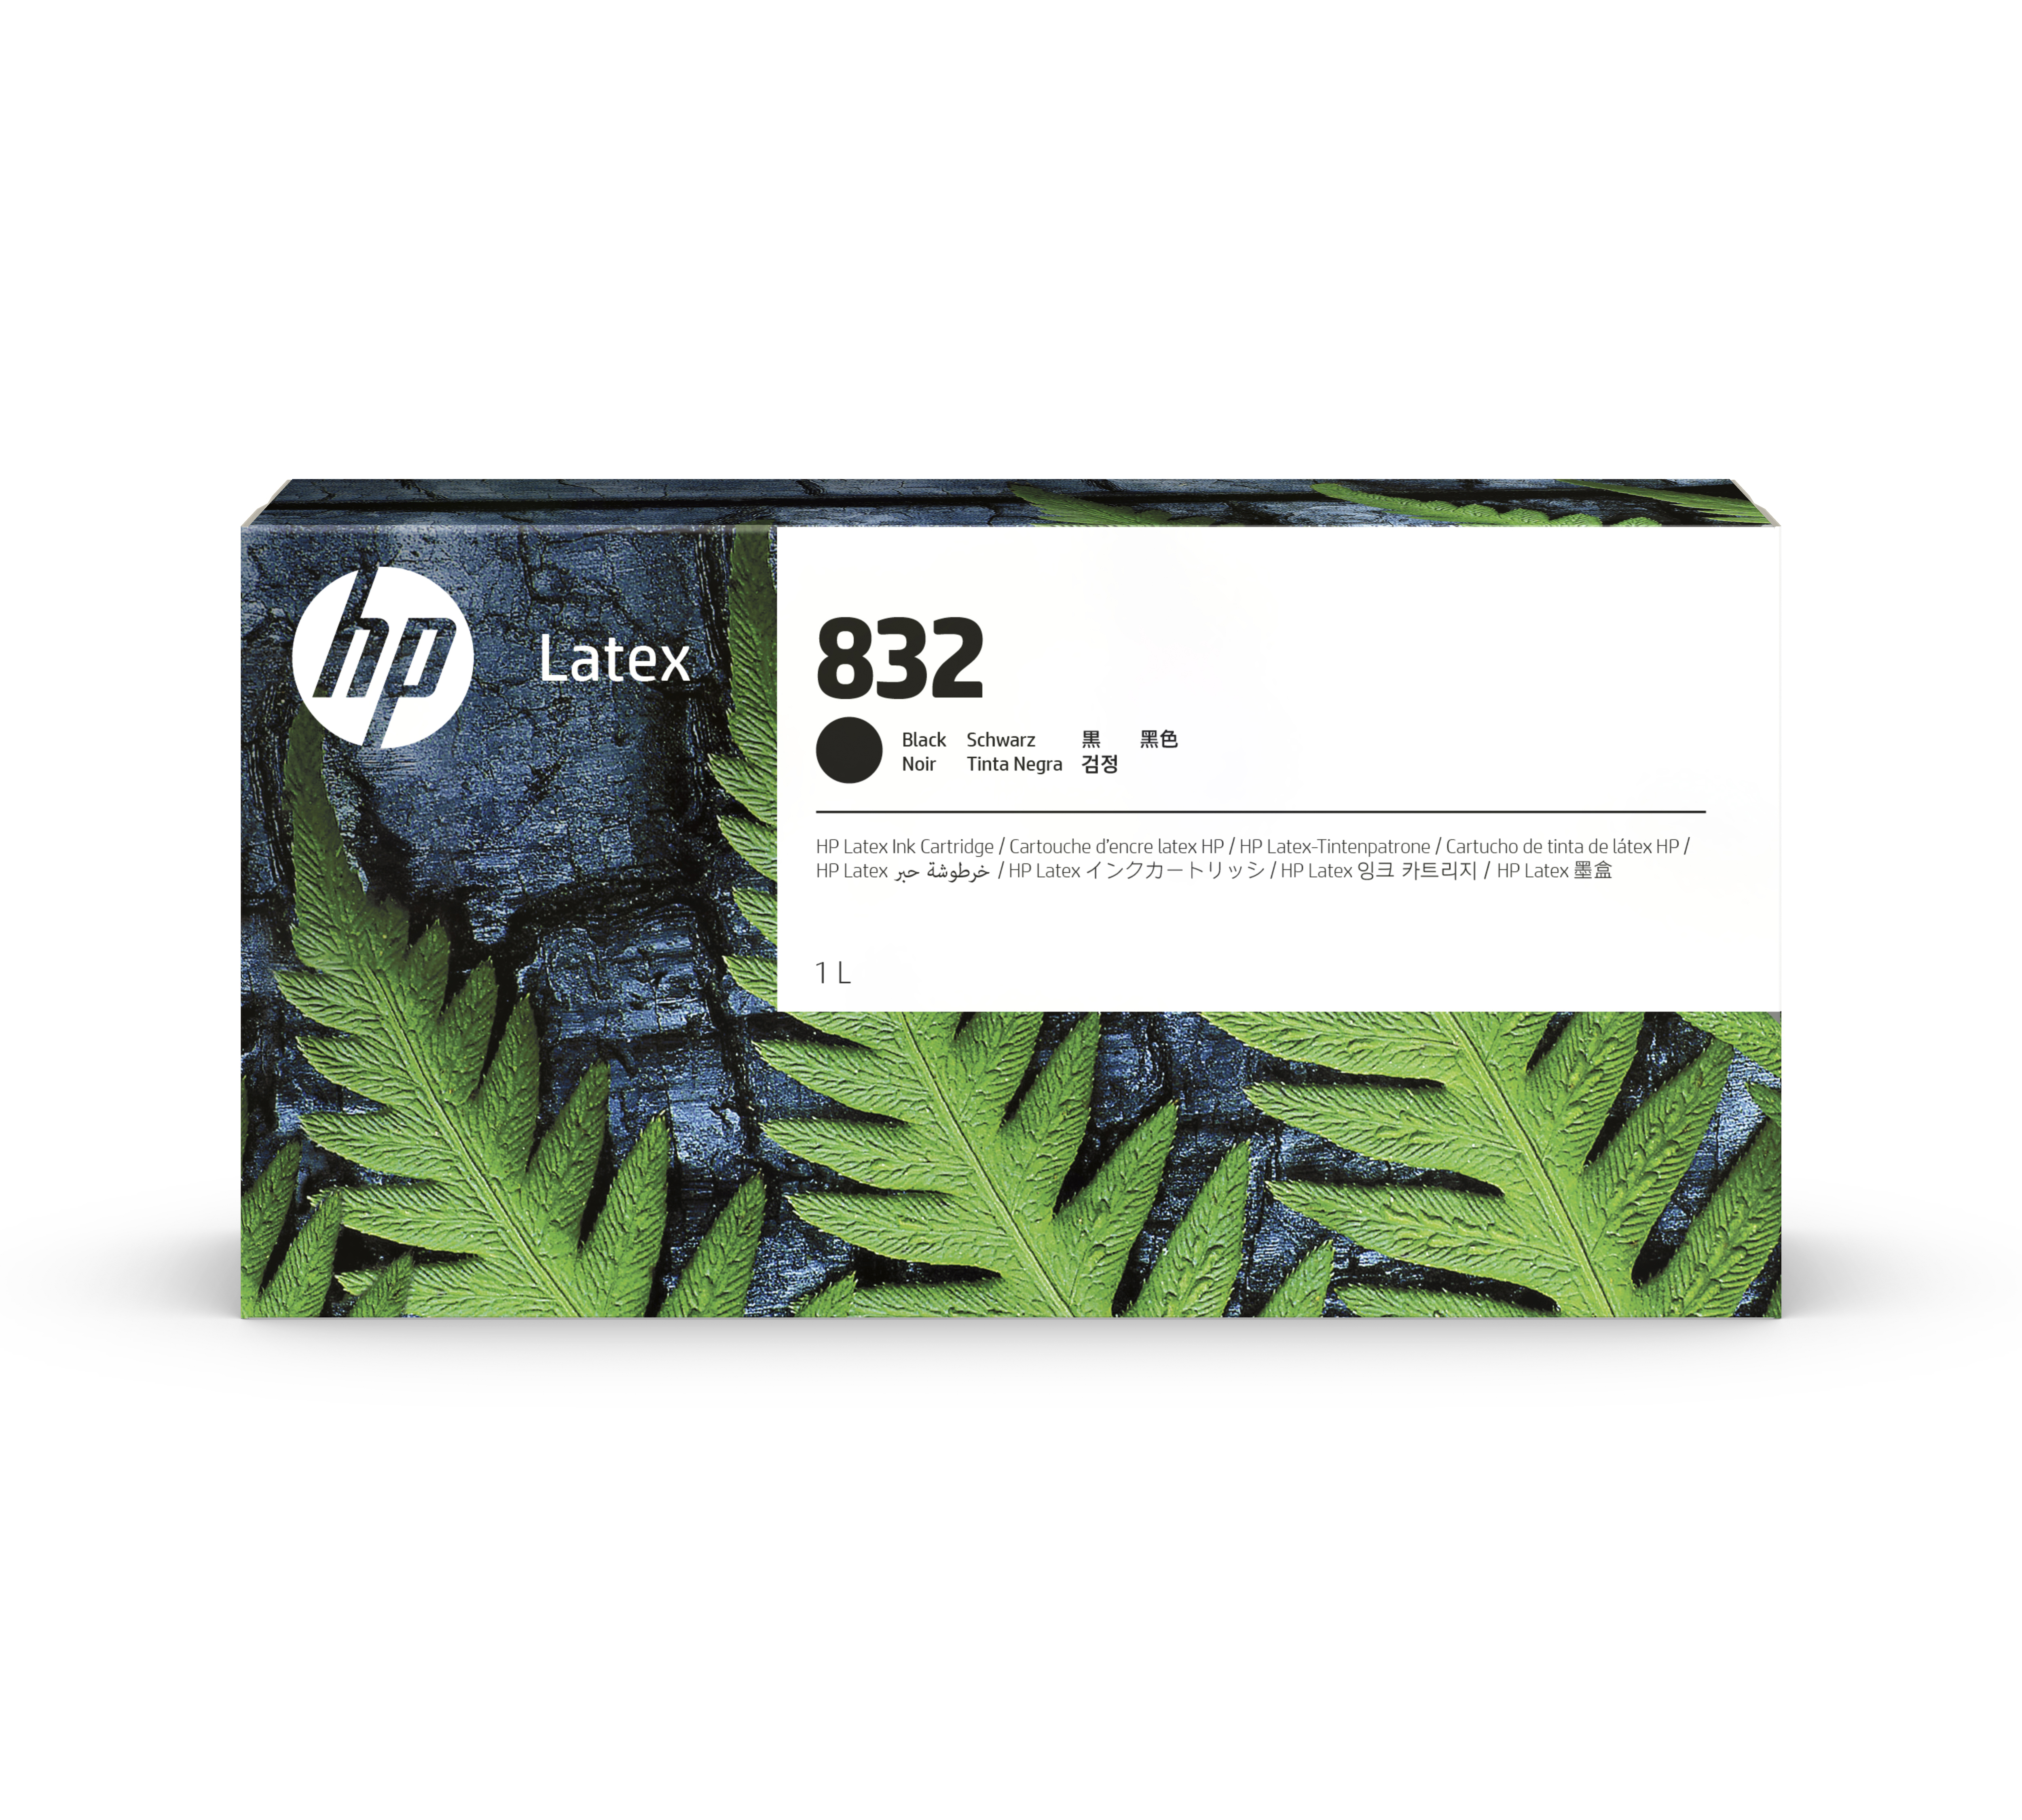 HP 832 Latex Tinte schwarz - 1 Liter